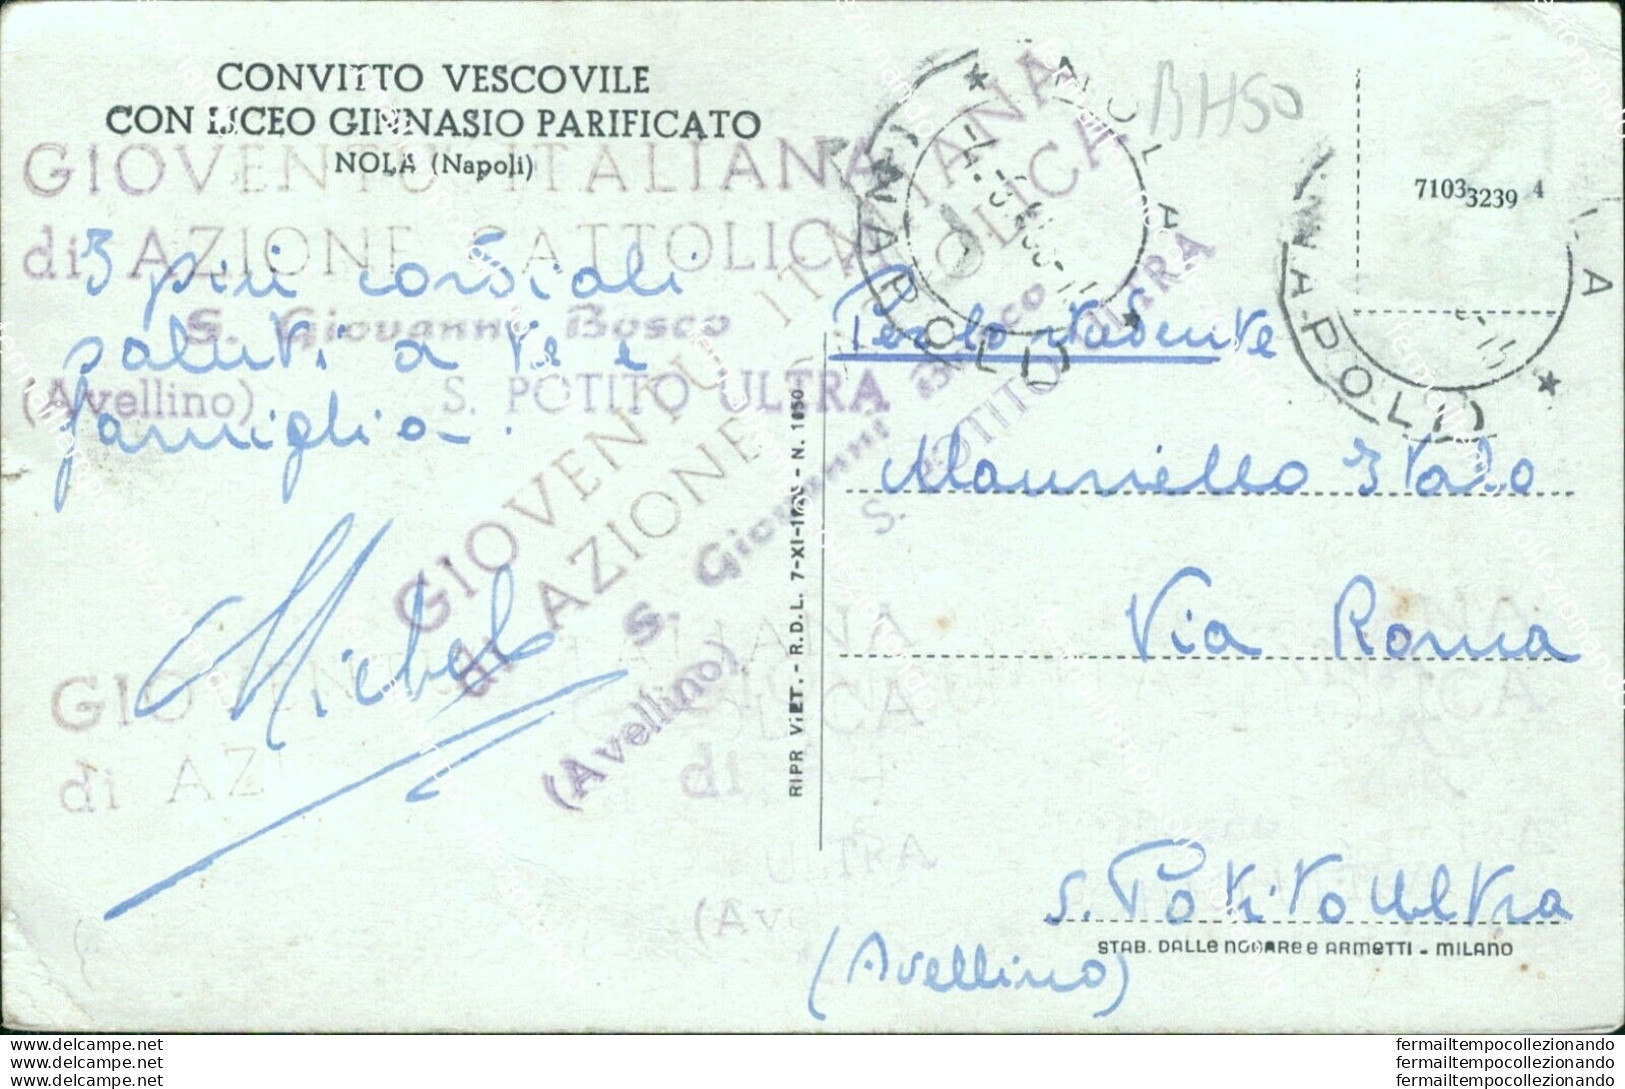 Bh50 Cartolina Nola Convitto Vescovile Con Liceo Ginnasio Provincia Di Napoli - Napoli